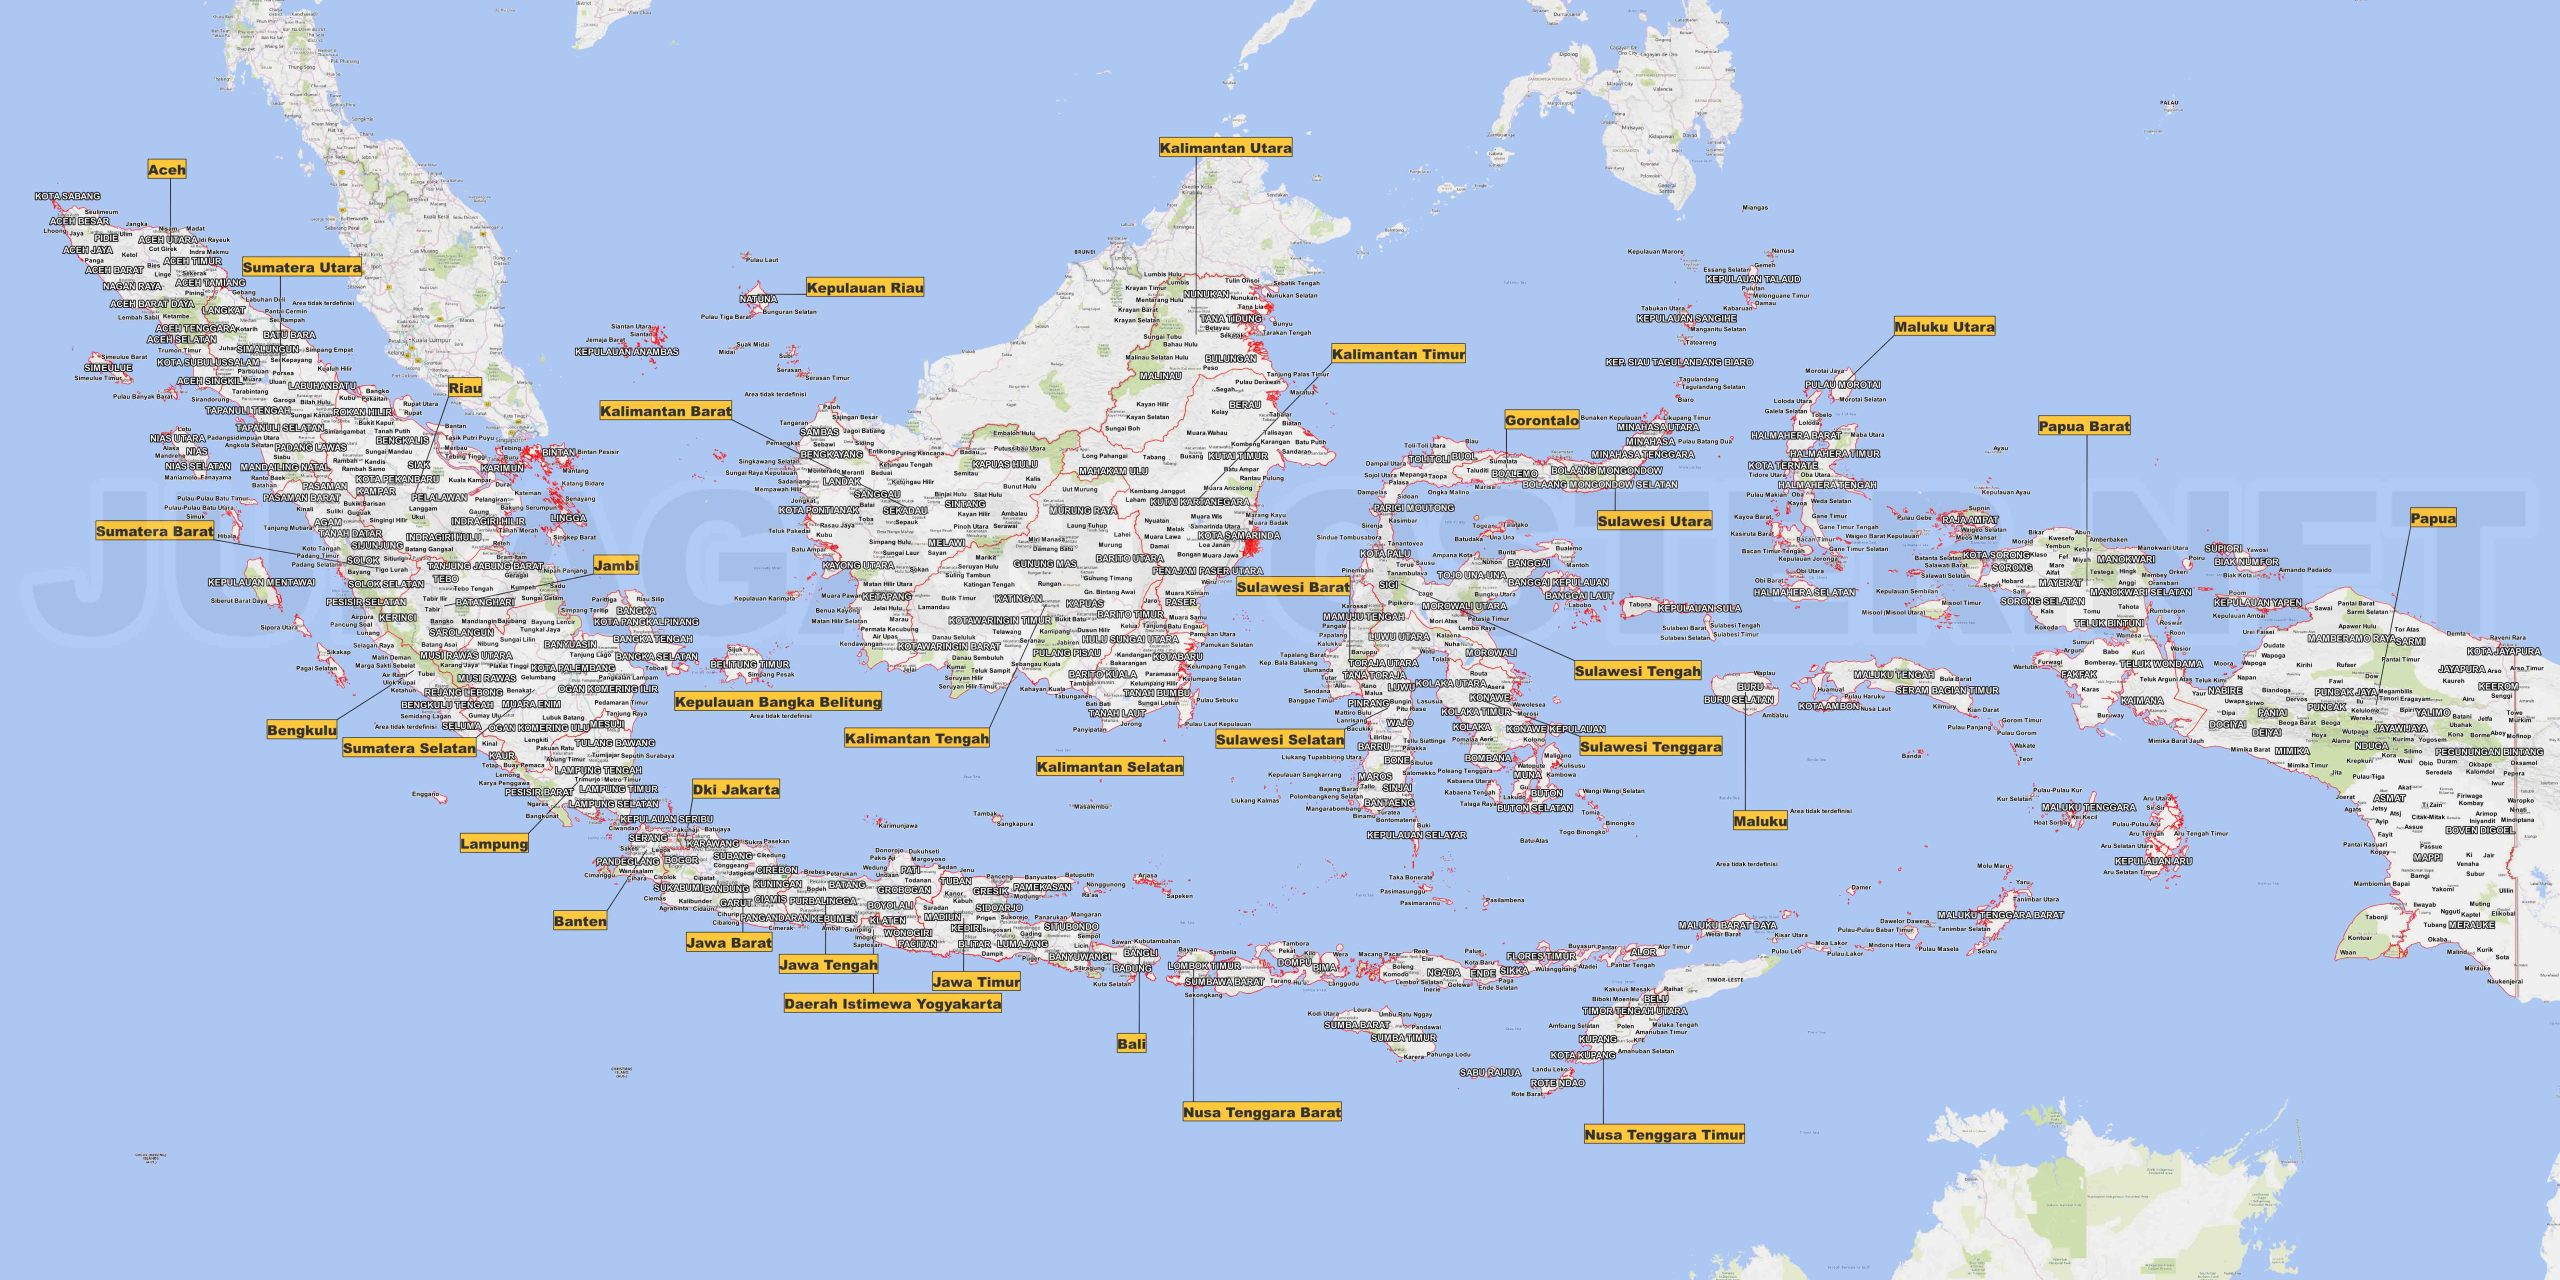 Gambar Peta Indonesia Mudah: Panduan Gambar Nusantara